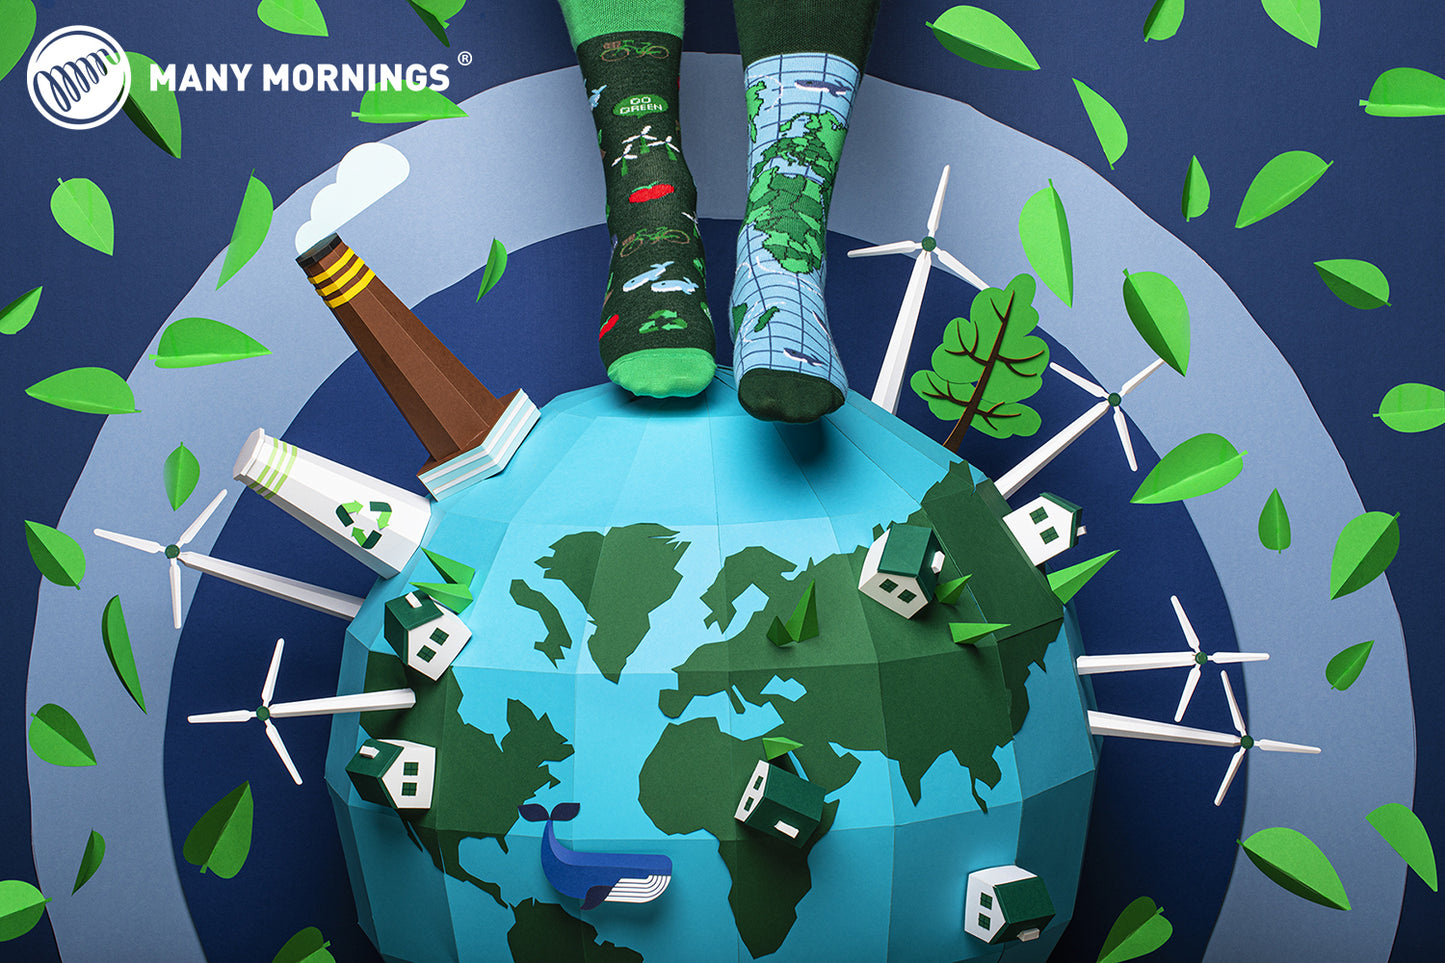 GO GREEN Socken, Socken mit Weltkarte, Motivsocken, Themensocken, Geschenkidee für Fridays For Future.